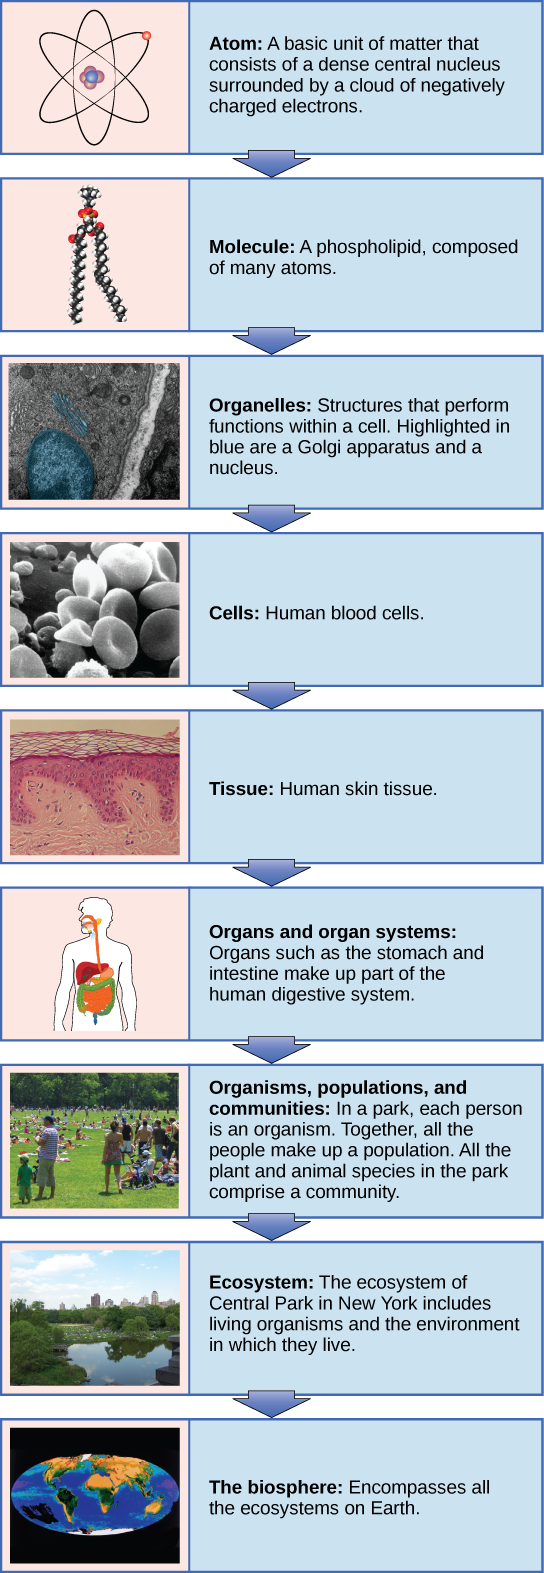 Un diagrama de flujo muestra la jerarquía de los organismos vivos. De menor a mayor, esta jerarquía incluye: 1 Un átomo, con protones, neutrones y electrones. 2 Moléculas como el fosfolípido mostrado, compuesto por átomos. 3 Organelos, como el aparato de Golgi y núcleos, que existen dentro de las células. 4 Células, como un glóbulo rojo. 5 Tejidos, como el tejido cutáneo humano. 6 Órganos como el estómago y el intestino conforman el sistema digestivo humano, ejemplo de un sistema de órganos. 7 Organismos, poblaciones y comunidades. En un parque, cada persona es un organismo. En conjunto, toda la gente forma una población. Todas las especies vegetales y animales del parque comprenden una comunidad. 8 Ecosistemas: El ecosistema de Central Park en Nueva York incluye los organismos vivos y el ambiente en el que viven. 9 La biosfera: abarca todos los ecosistemas de la Tierra.